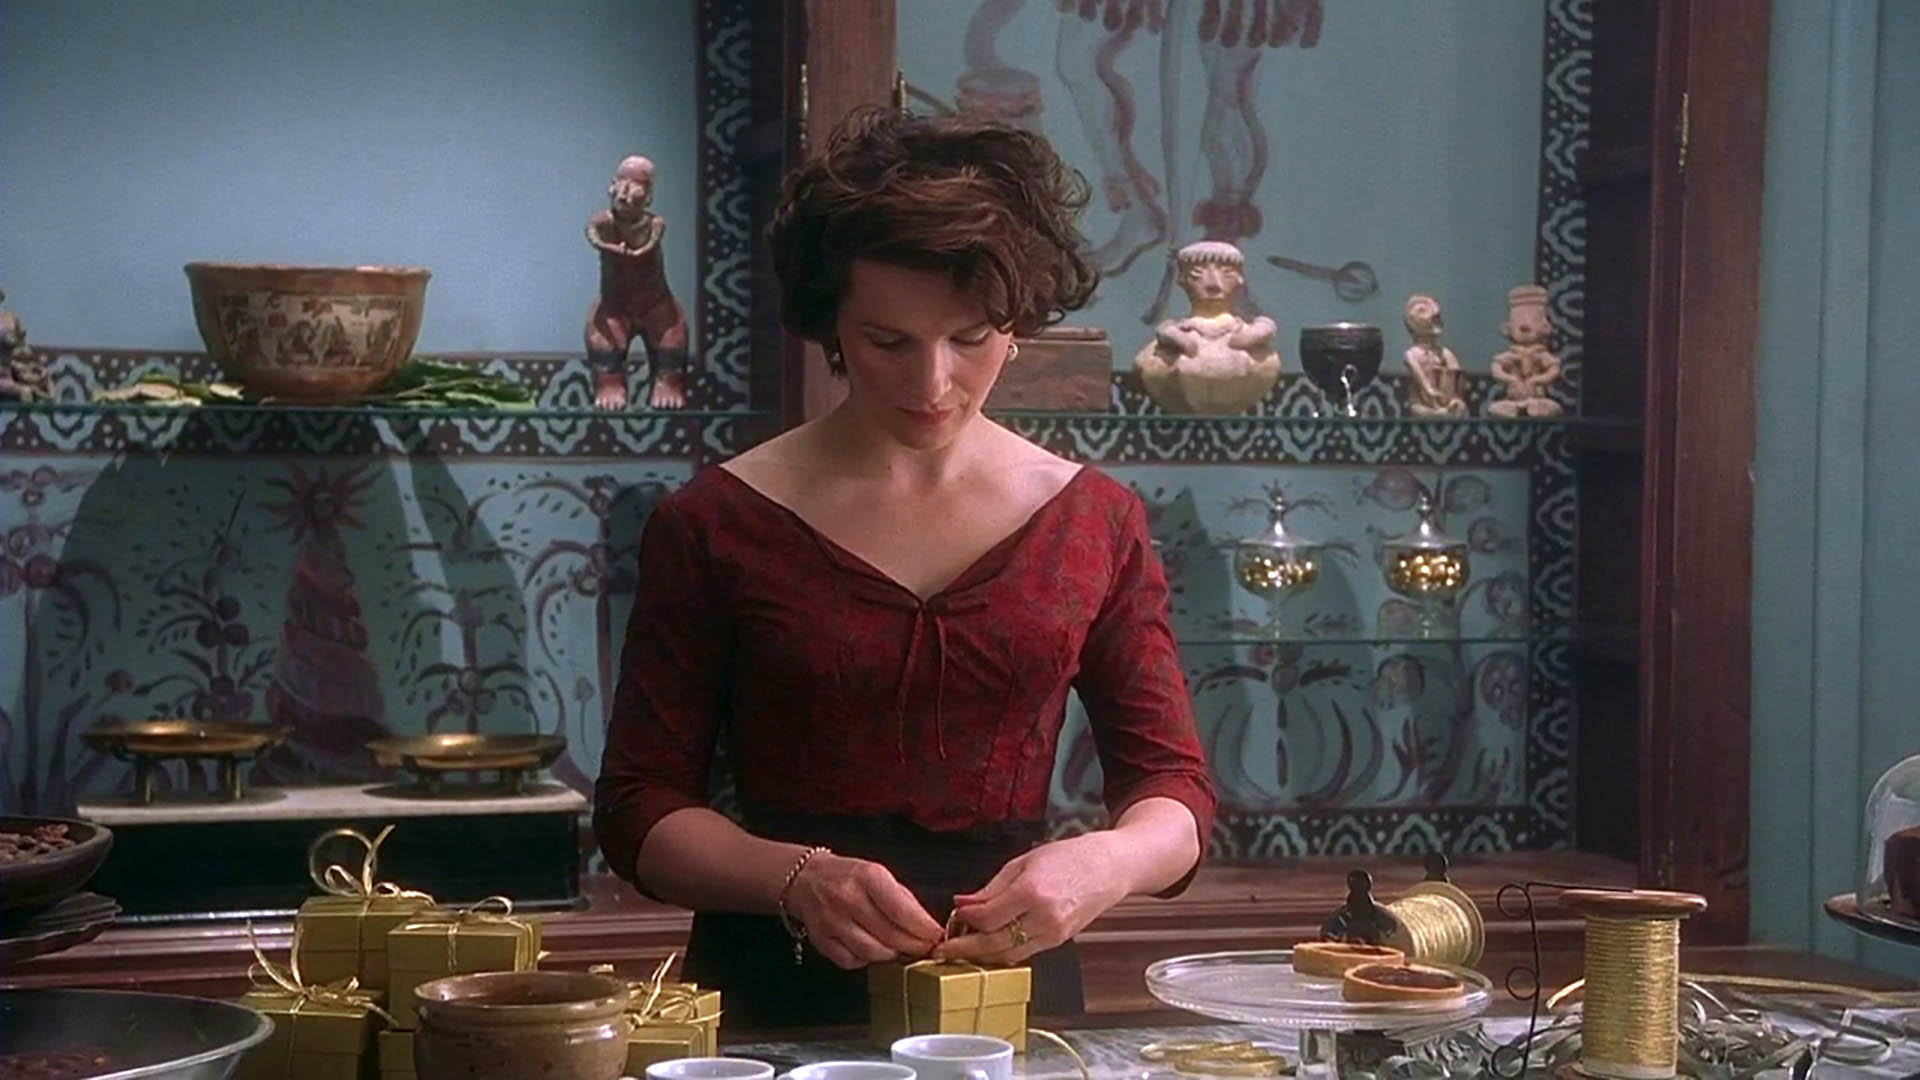 Scena del film Chocolat in cui Vianne, la protagonista, confeziona cioccolatini nel suo negozio 